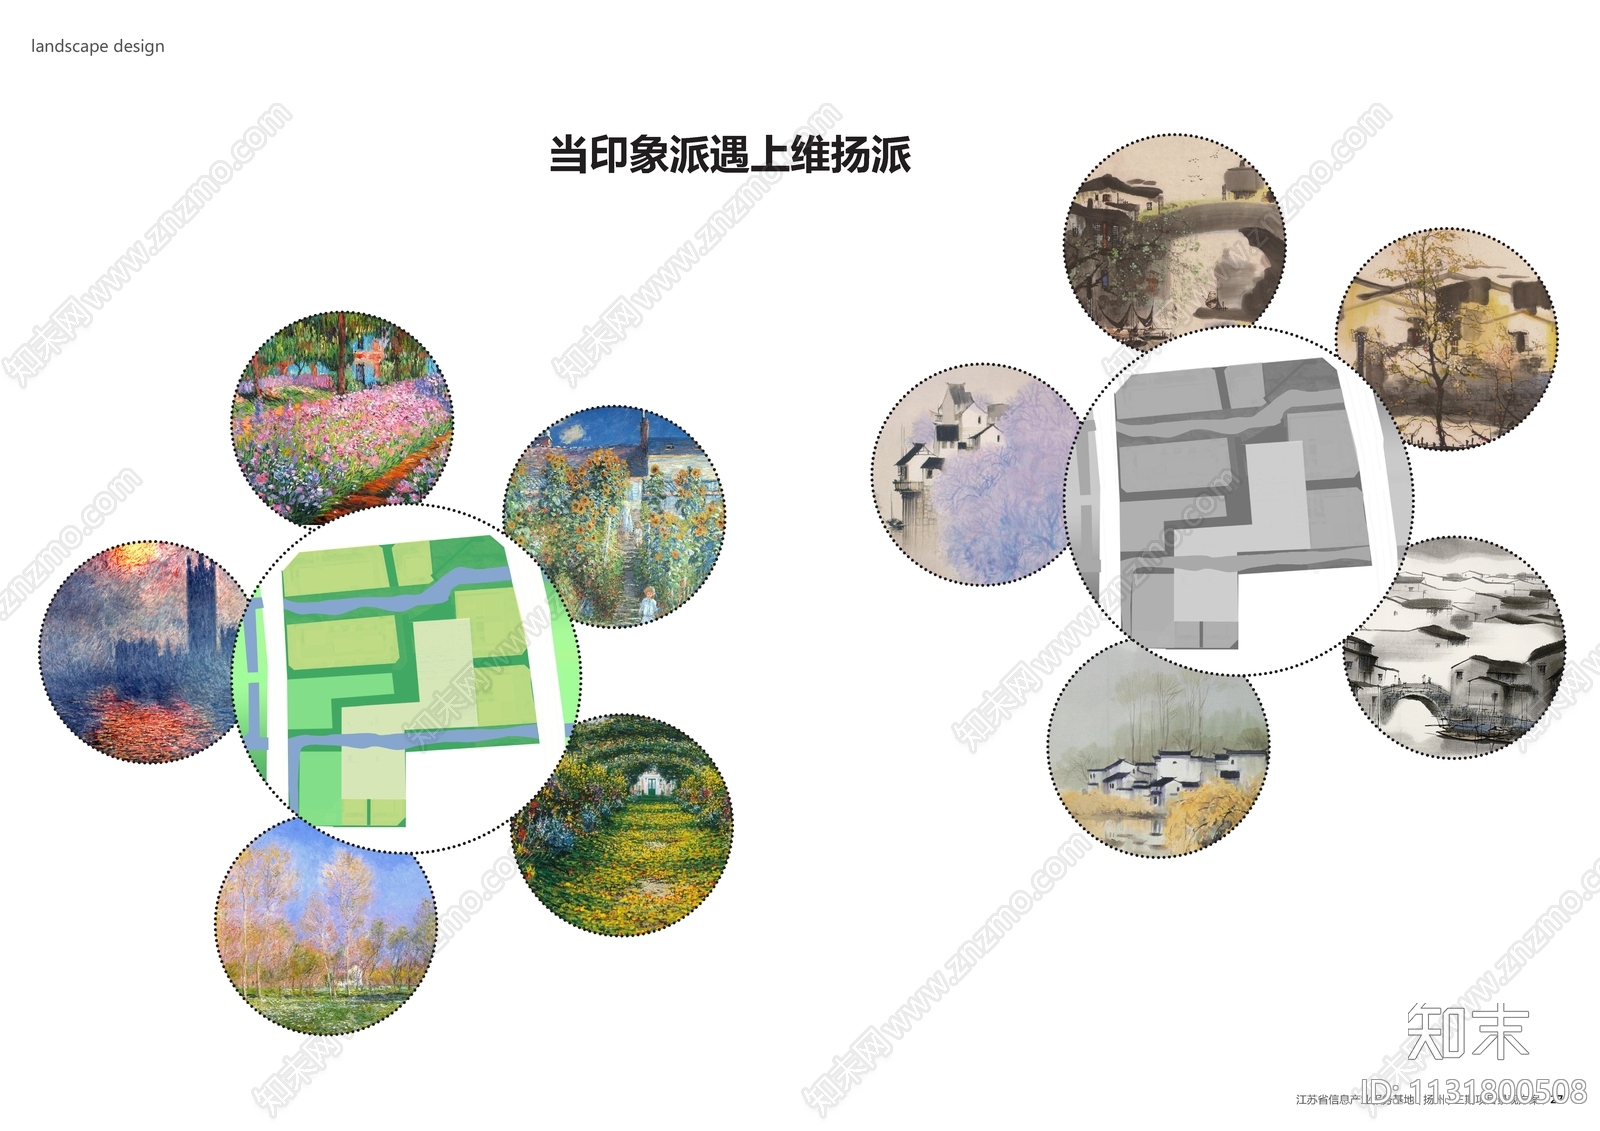 扬州信息产业服务基地项目景观方案文本下载【ID:1131800508】